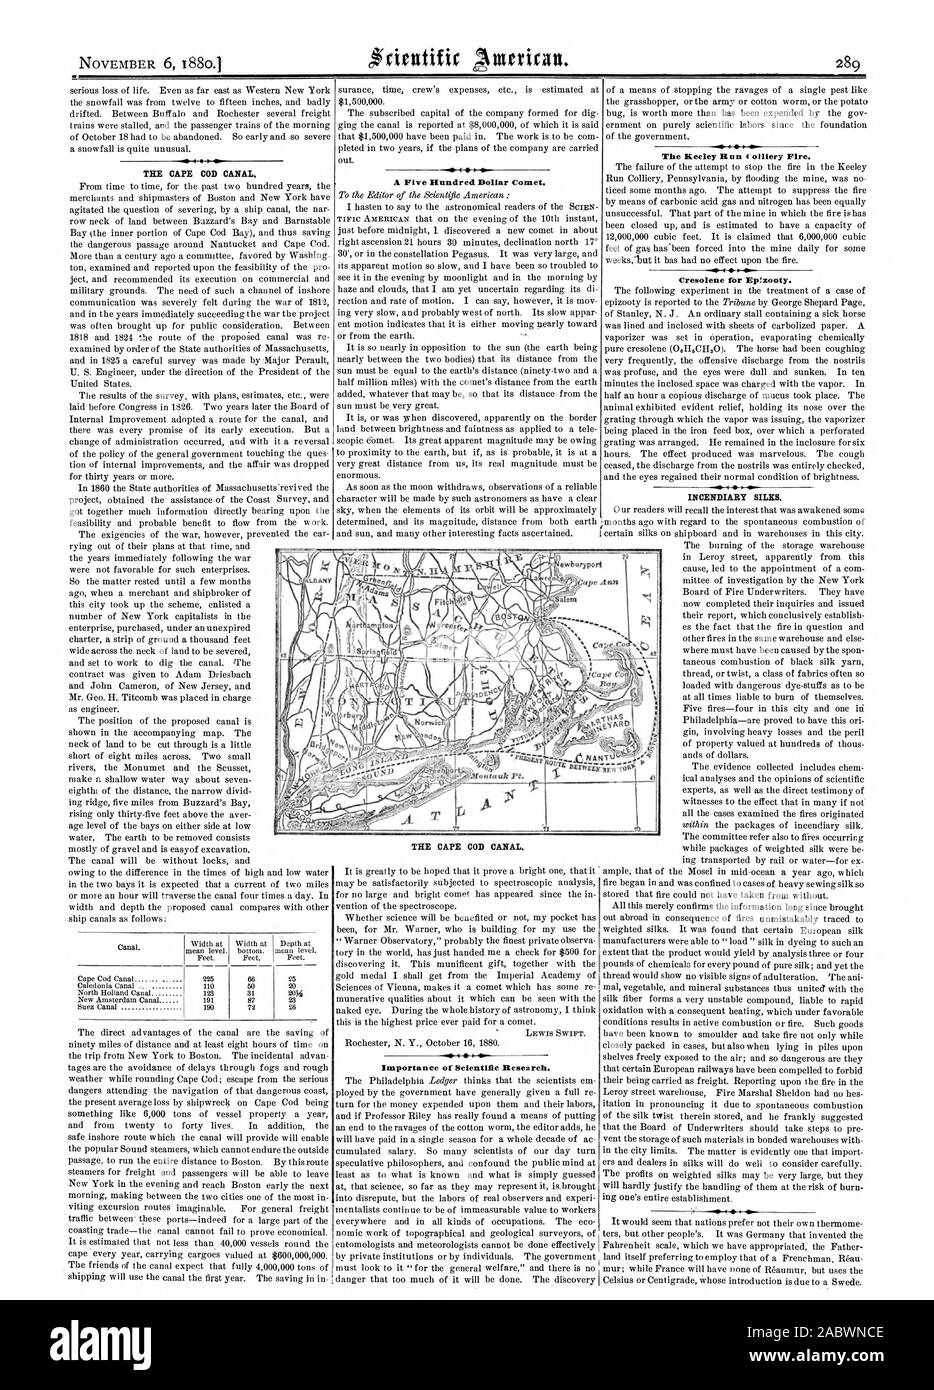 Le CAPE COD CANAL. Cinq cents dollars une comète. LEWIS SWIFT. Importance de la recherche scientifique. Le feu. La mine de Run Keeley Pour Cresolene Eplzooty. Les soies incendiaires. Le CAPE COD CANAL., Scientific American, 1880-11-06 Banque D'Images